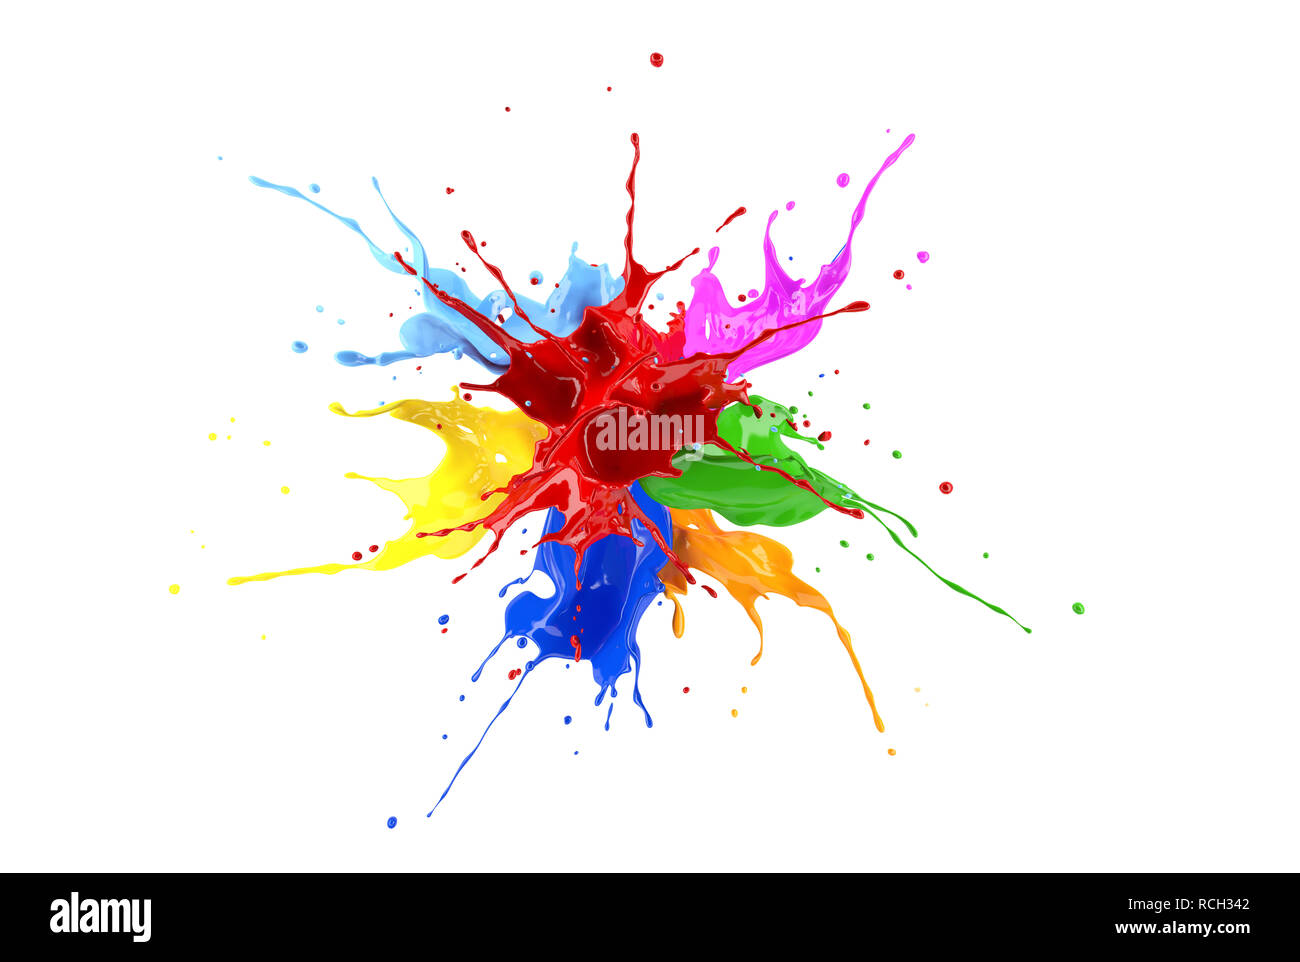 Rouge, bleu, rose, jaune, bleu clair, orange et vert peinture splash d'explosion. Isolé sur fond blanc. Banque D'Images